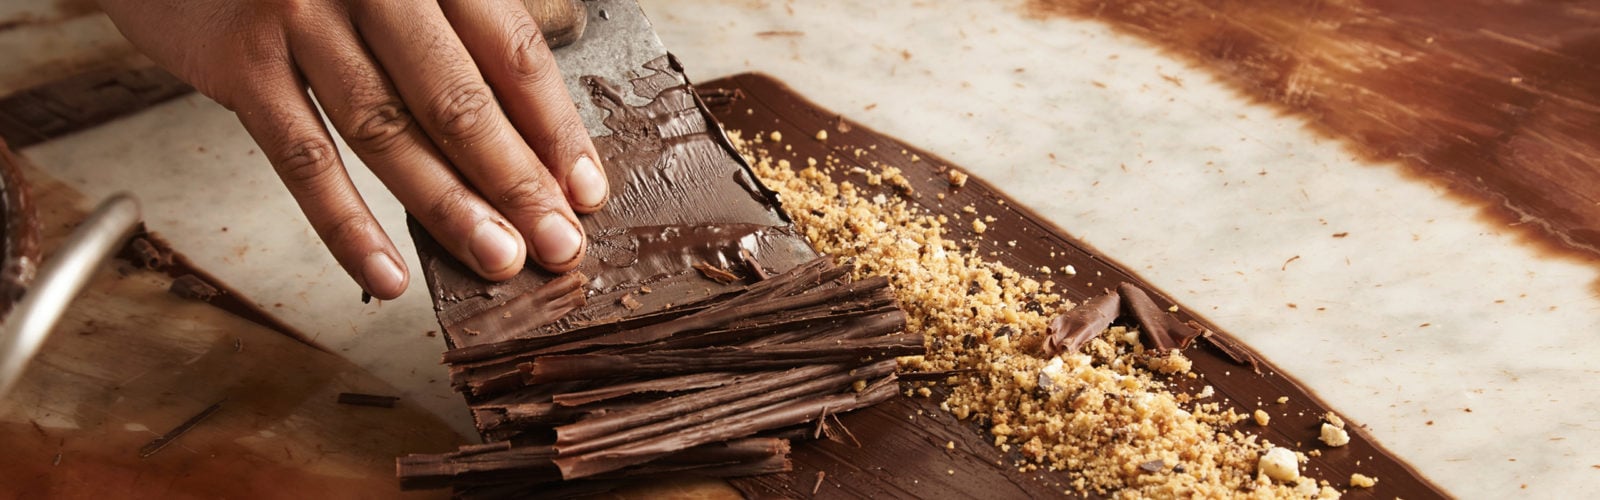 chocolate-making